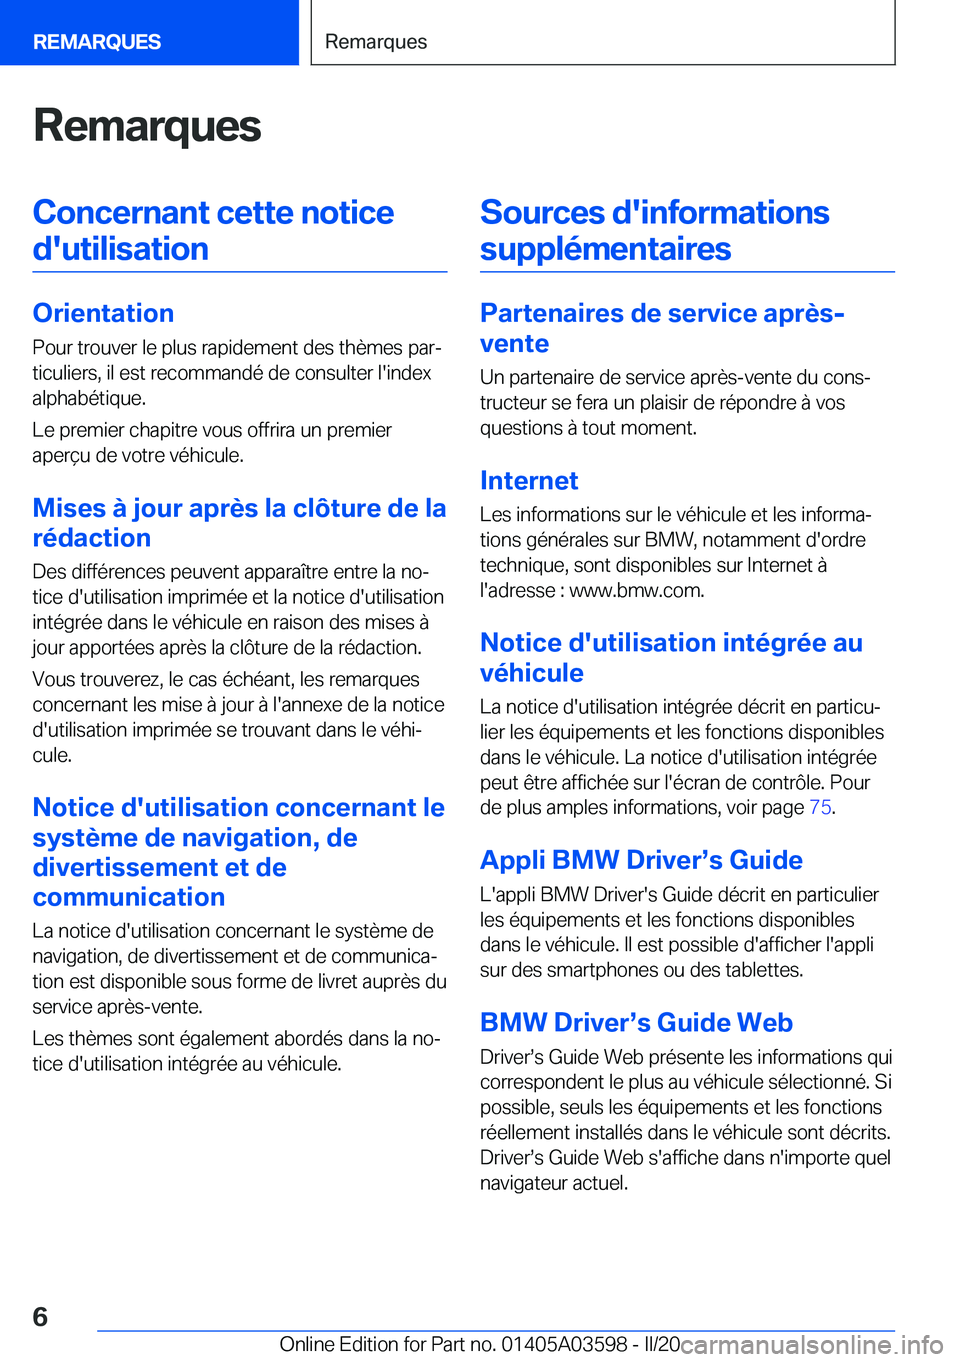 BMW X4 2020  Notices Demploi (in French) �R�e�m�a�r�q�u�e�s�C�o�n�c�e�r�n�a�n�t��c�e�t�t�e��n�o�t�i�c�e�d�'�u�t�i�l�i�s�a�t�i�o�n
�O�r�i�e�n�t�a�t�i�o�n �P�o�u�r��t�r�o�u�v�e�r��l�e��p�l�u�s��r�a�p�i�d�e�m�e�n�t��d�e�s��t�h�è�m�